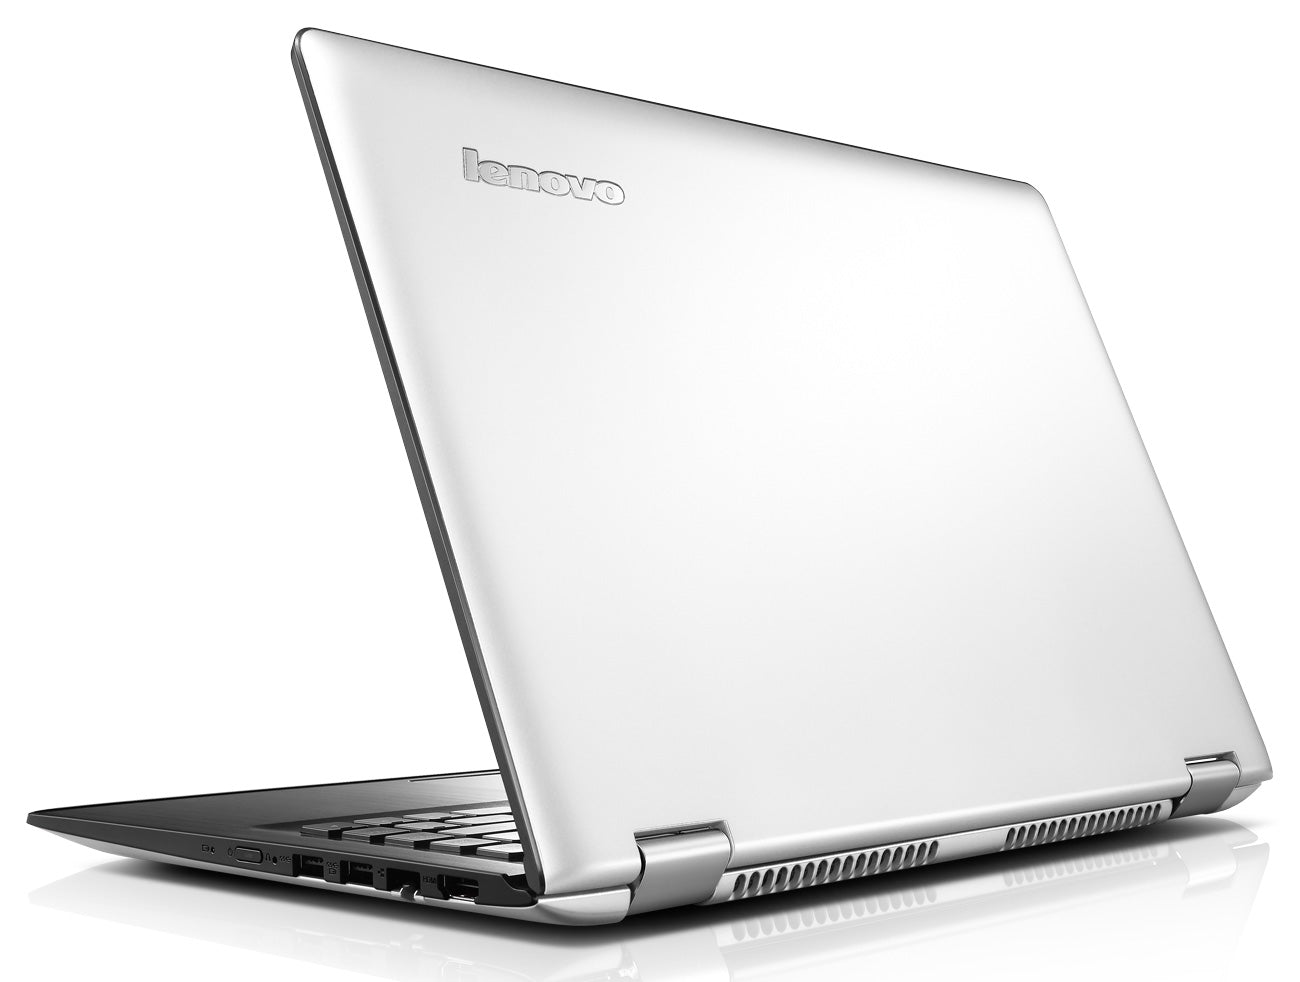 Lenovo Yoga 500 clicktofournisseur.com